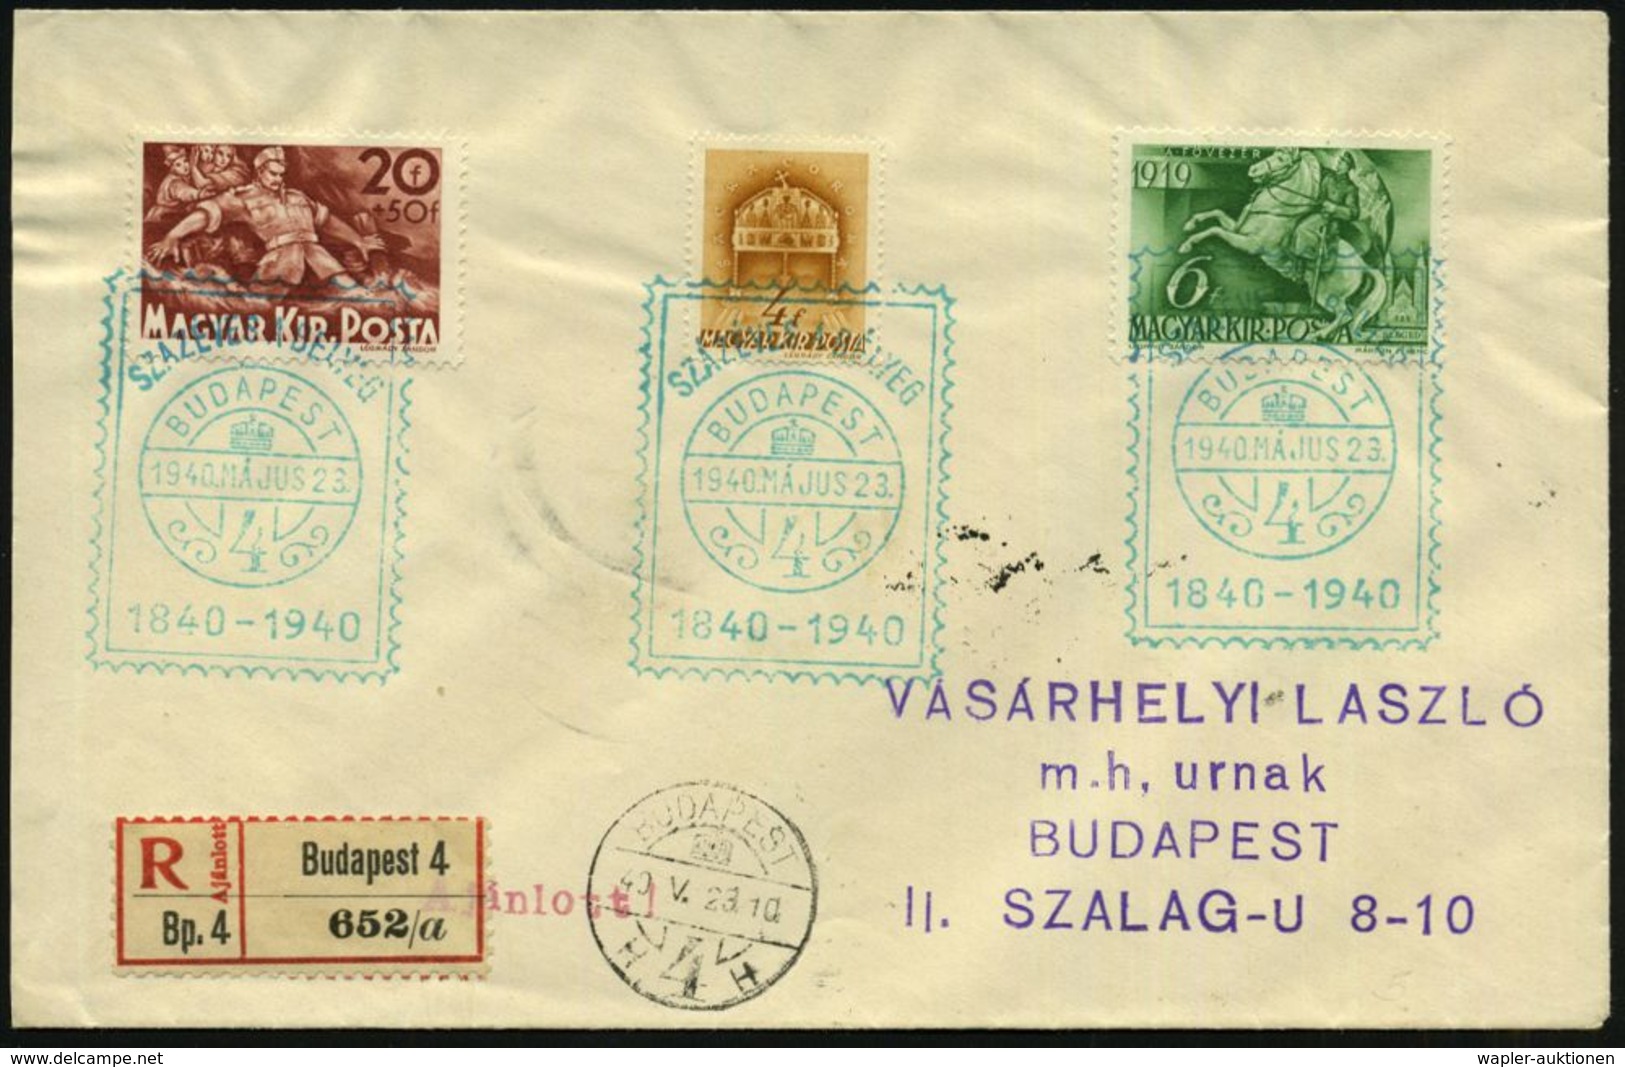 UNGARN 1940 (23.5.) Grüner SSt.: BUDAPEST/4/SZAZEVES A BELYEG/1840 - 1940 = 100 Jahre Britische Briefmarke (Markenimitat - Filatelistische Tentoonstellingen